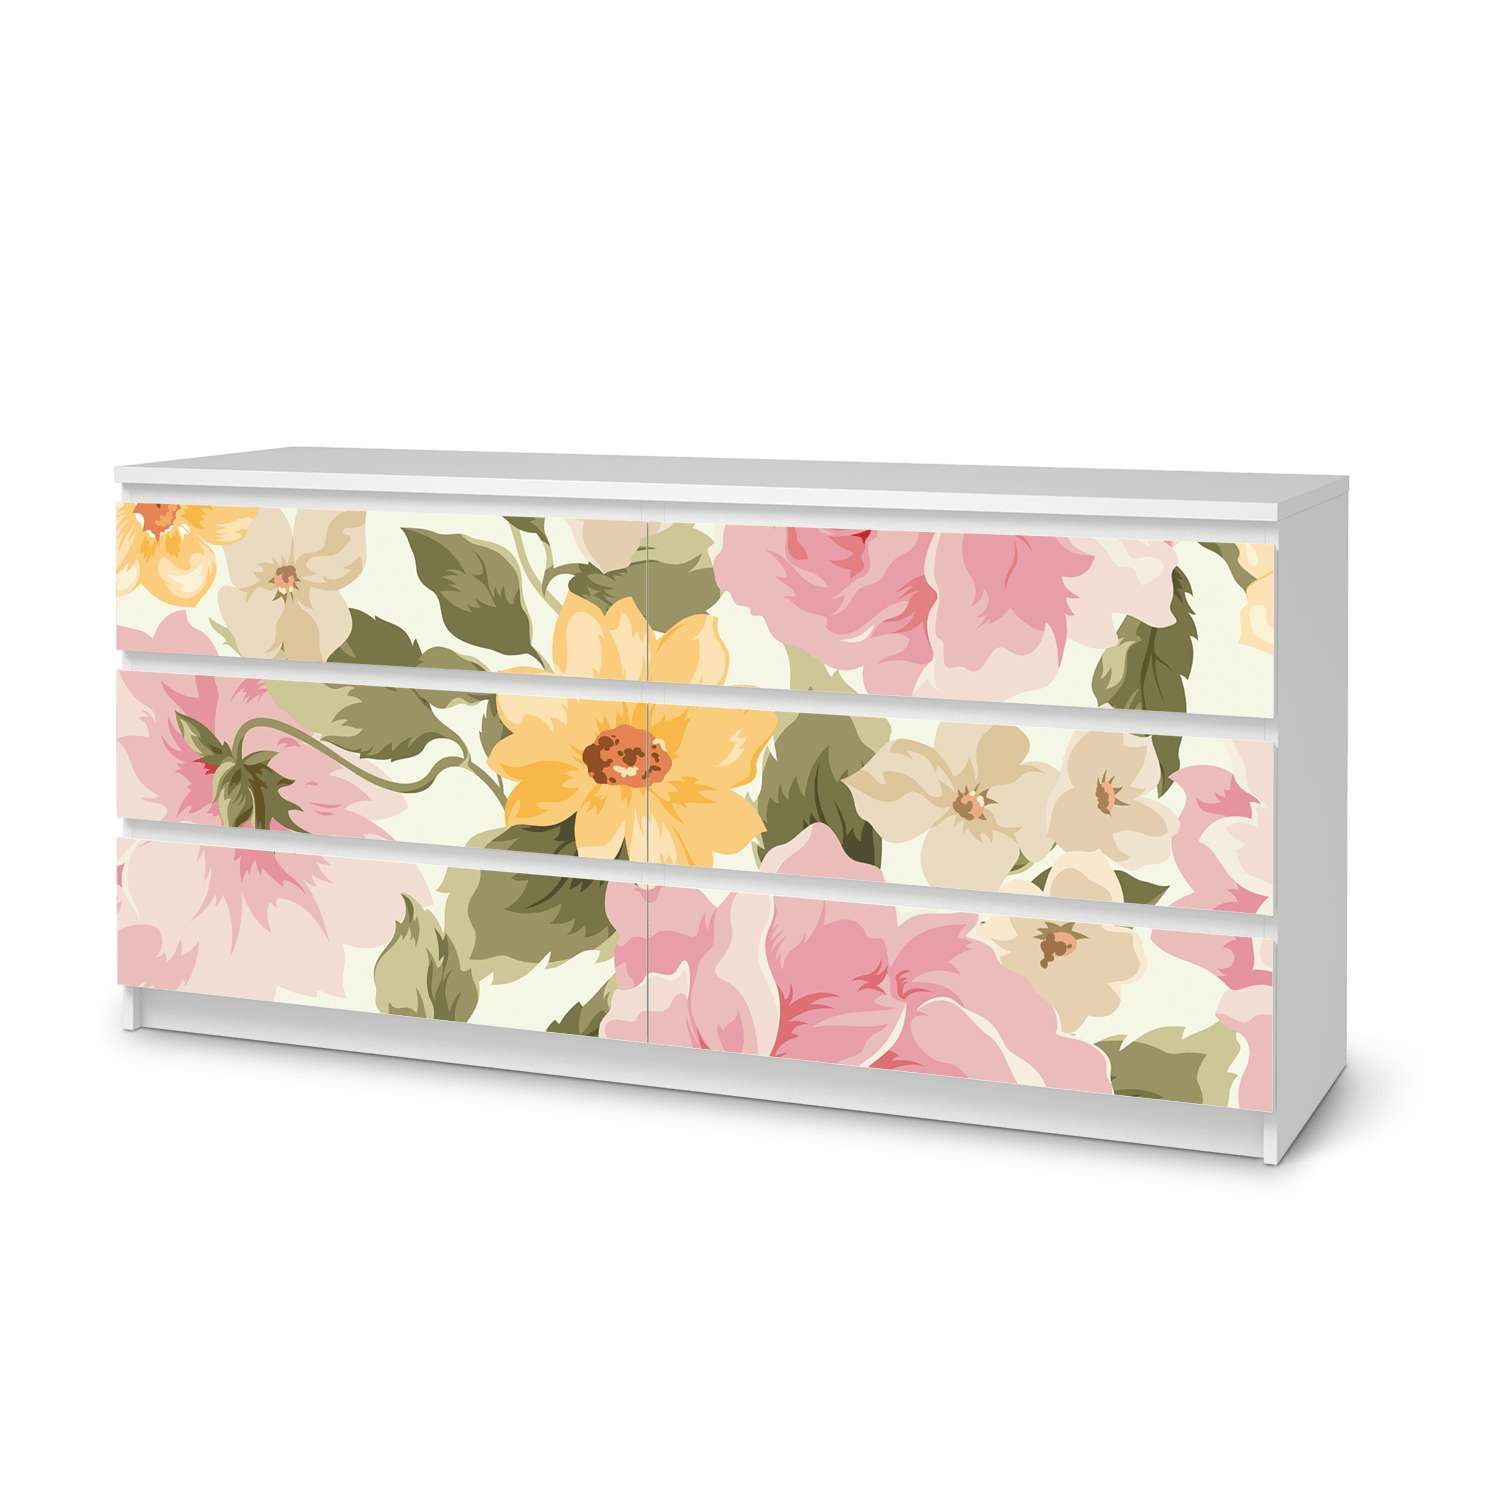 M?belfolie IKEA Malm Kommode 6 Schubladen (breit) - Design: Vintage Flowers von creatisto